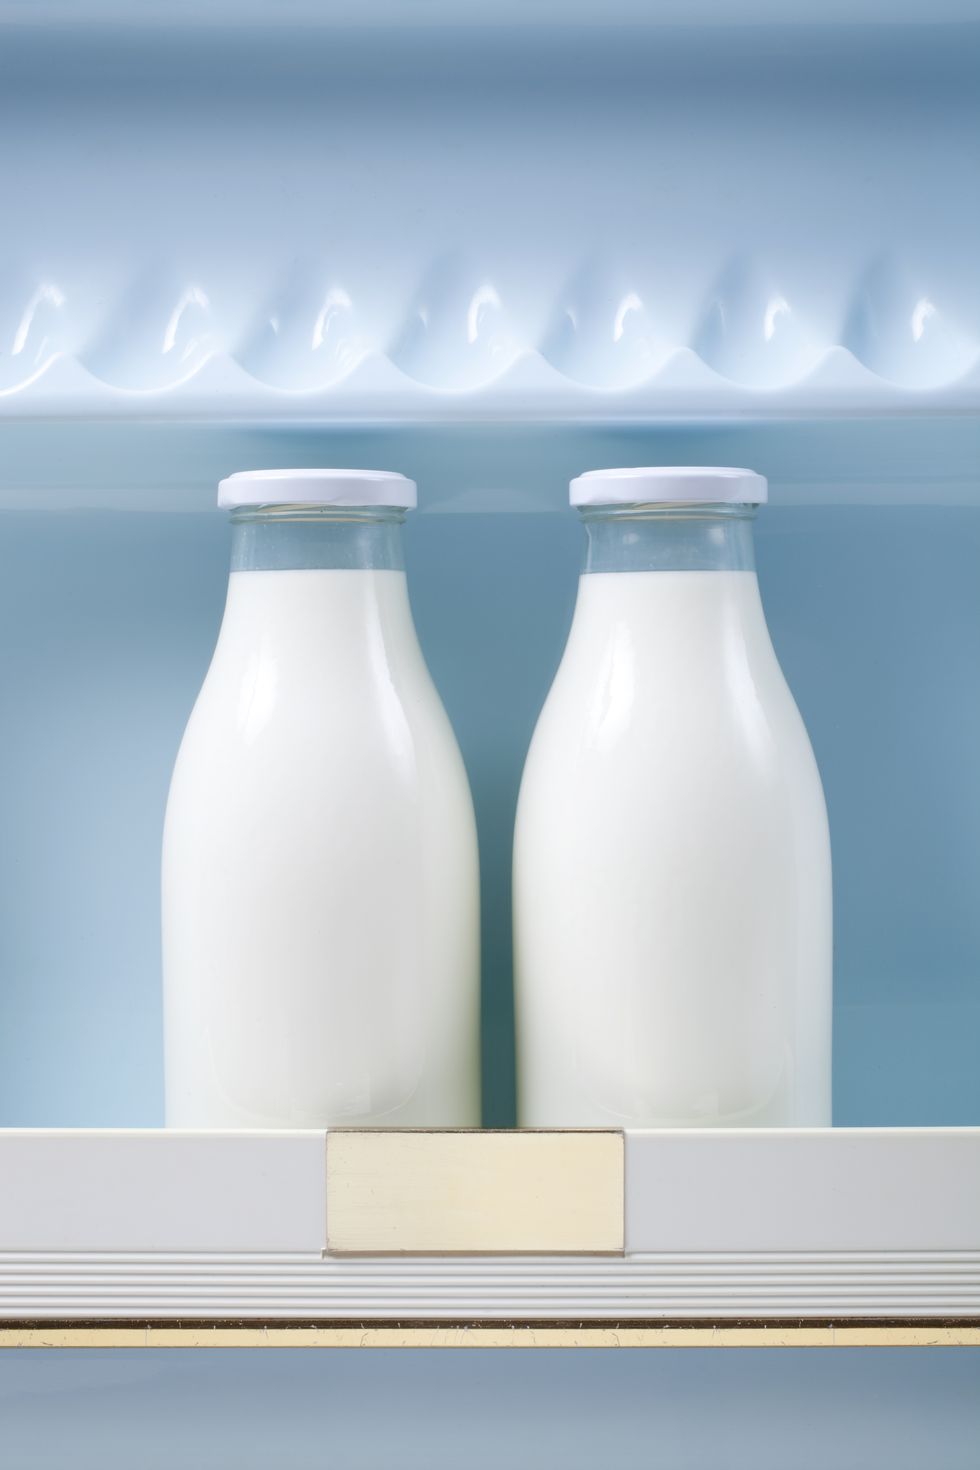 Why you shouldn't store your milk in the fridge door